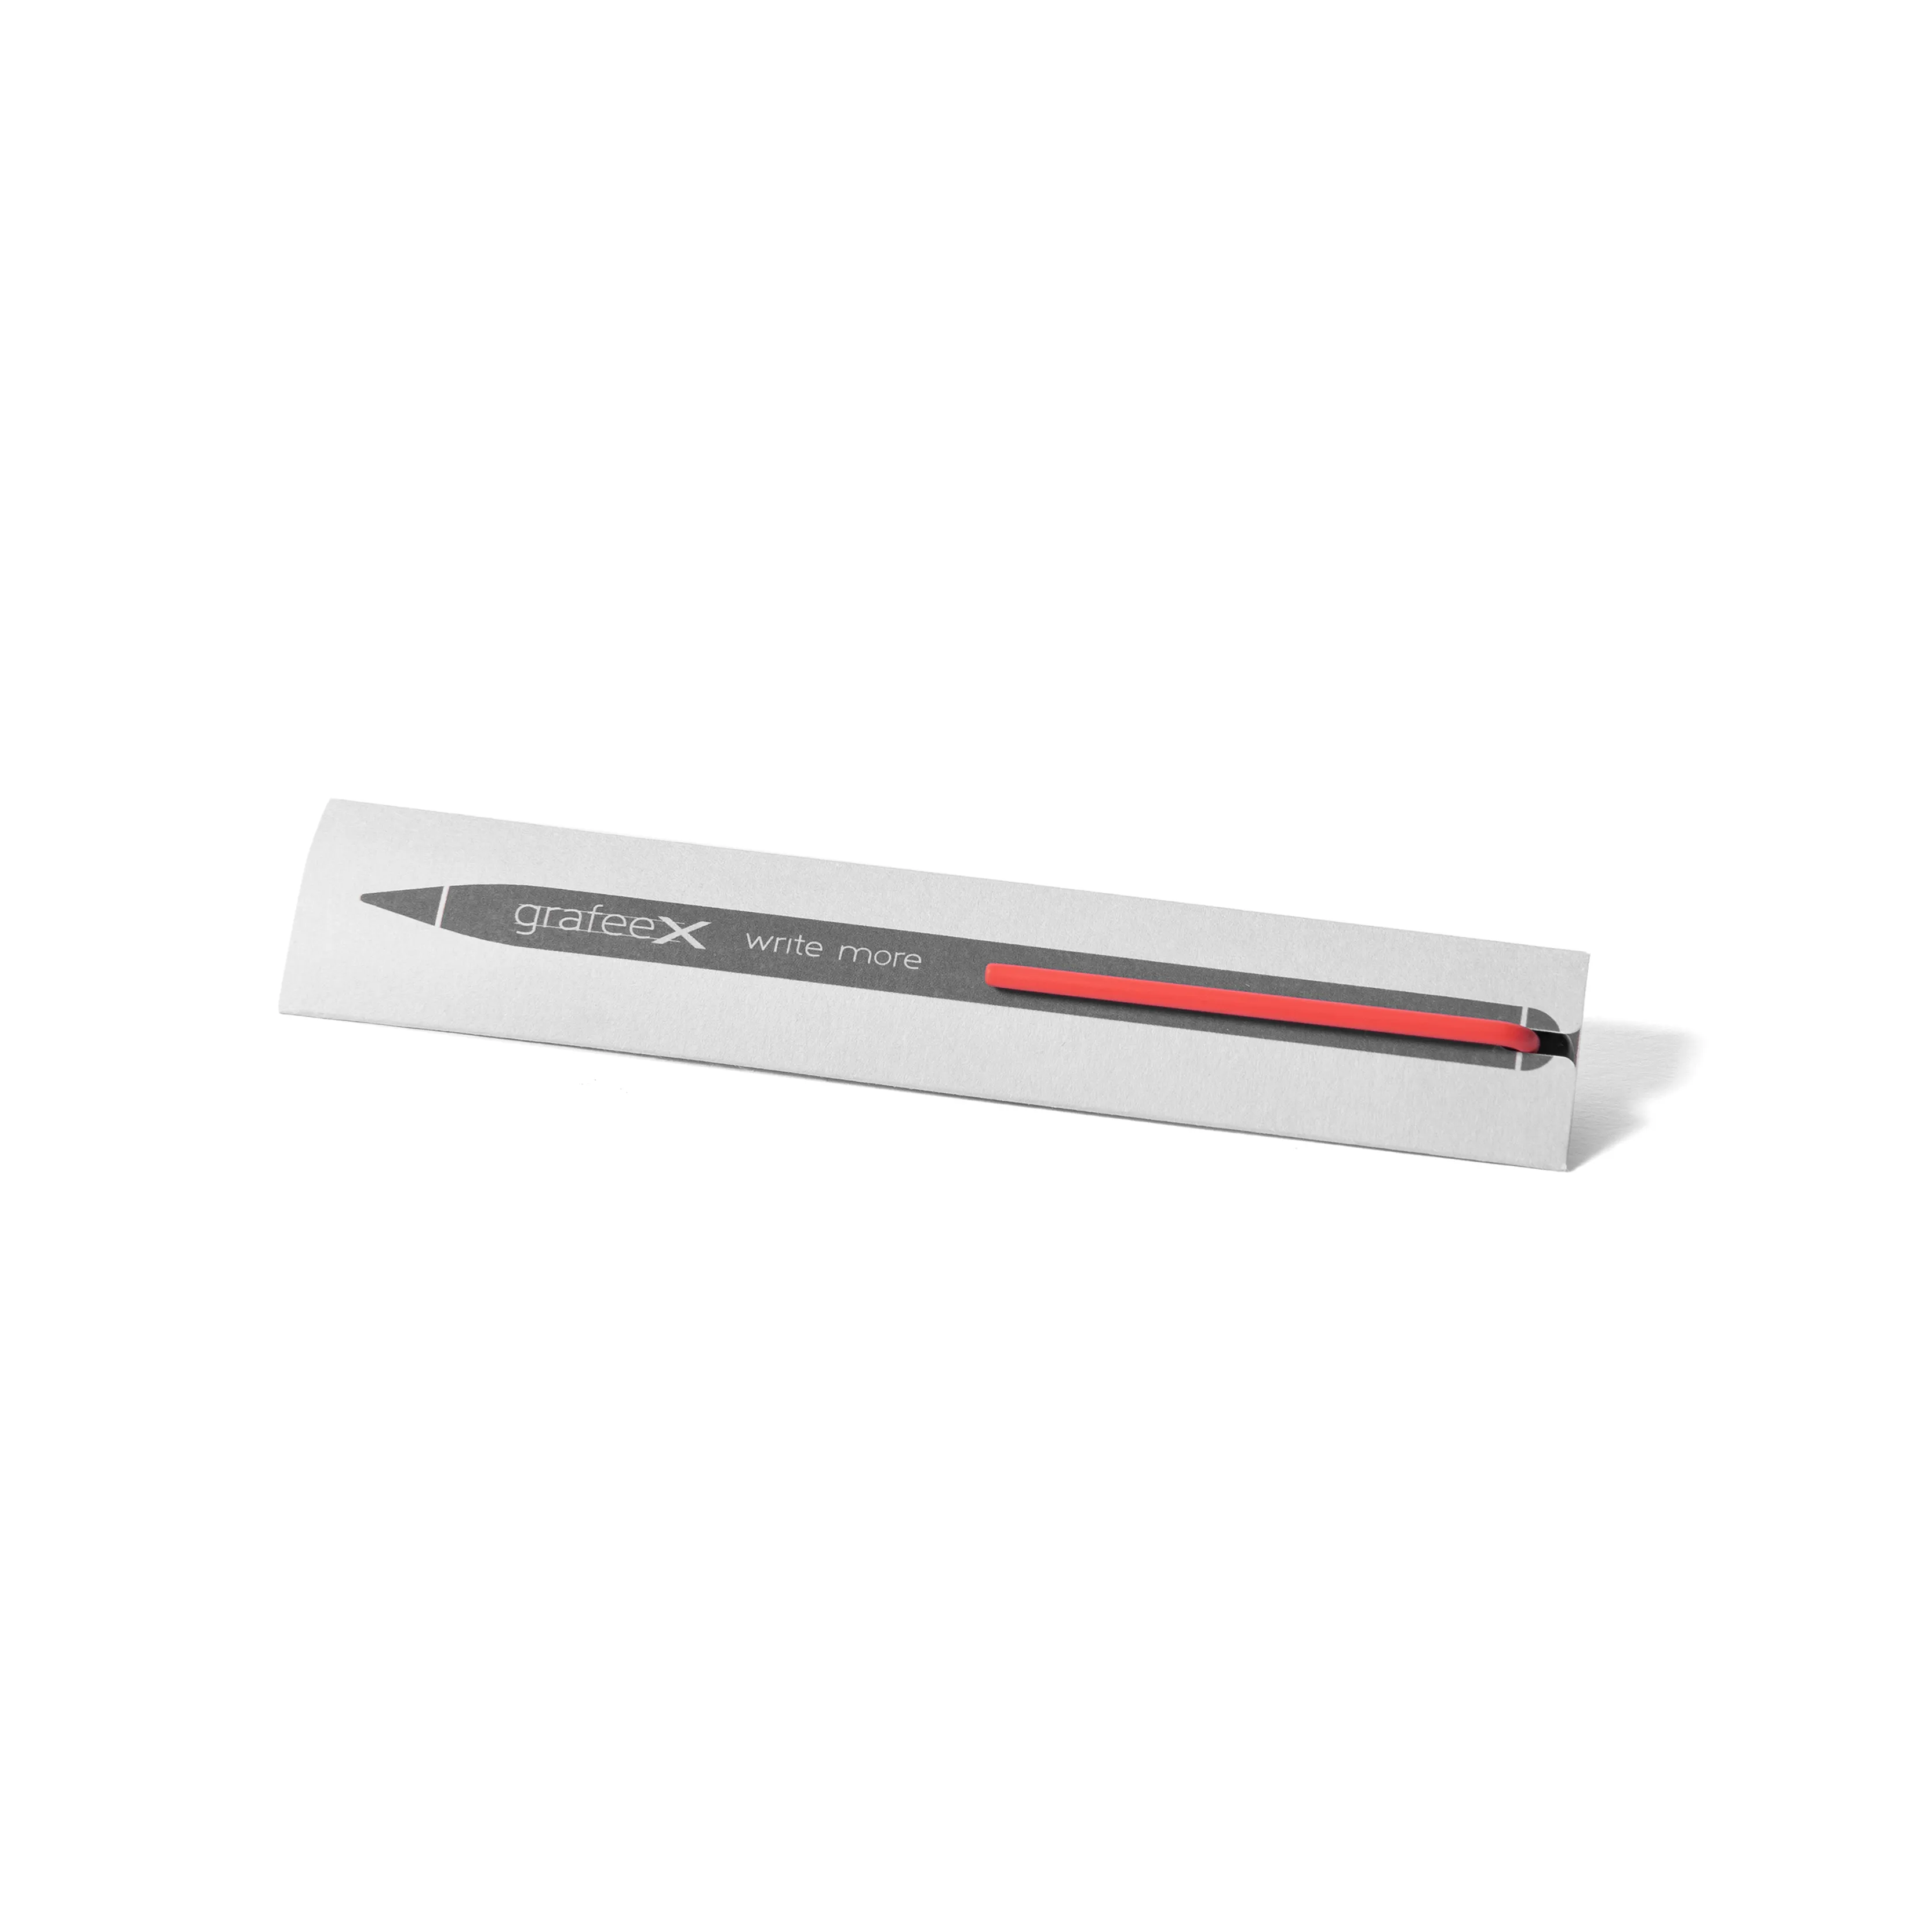 販促用ギフトに最適な赤いクリップとカスタムロゴを備えたイタリア製の新しいデザインのベストセラーアルミニウムGrafeex鉛筆